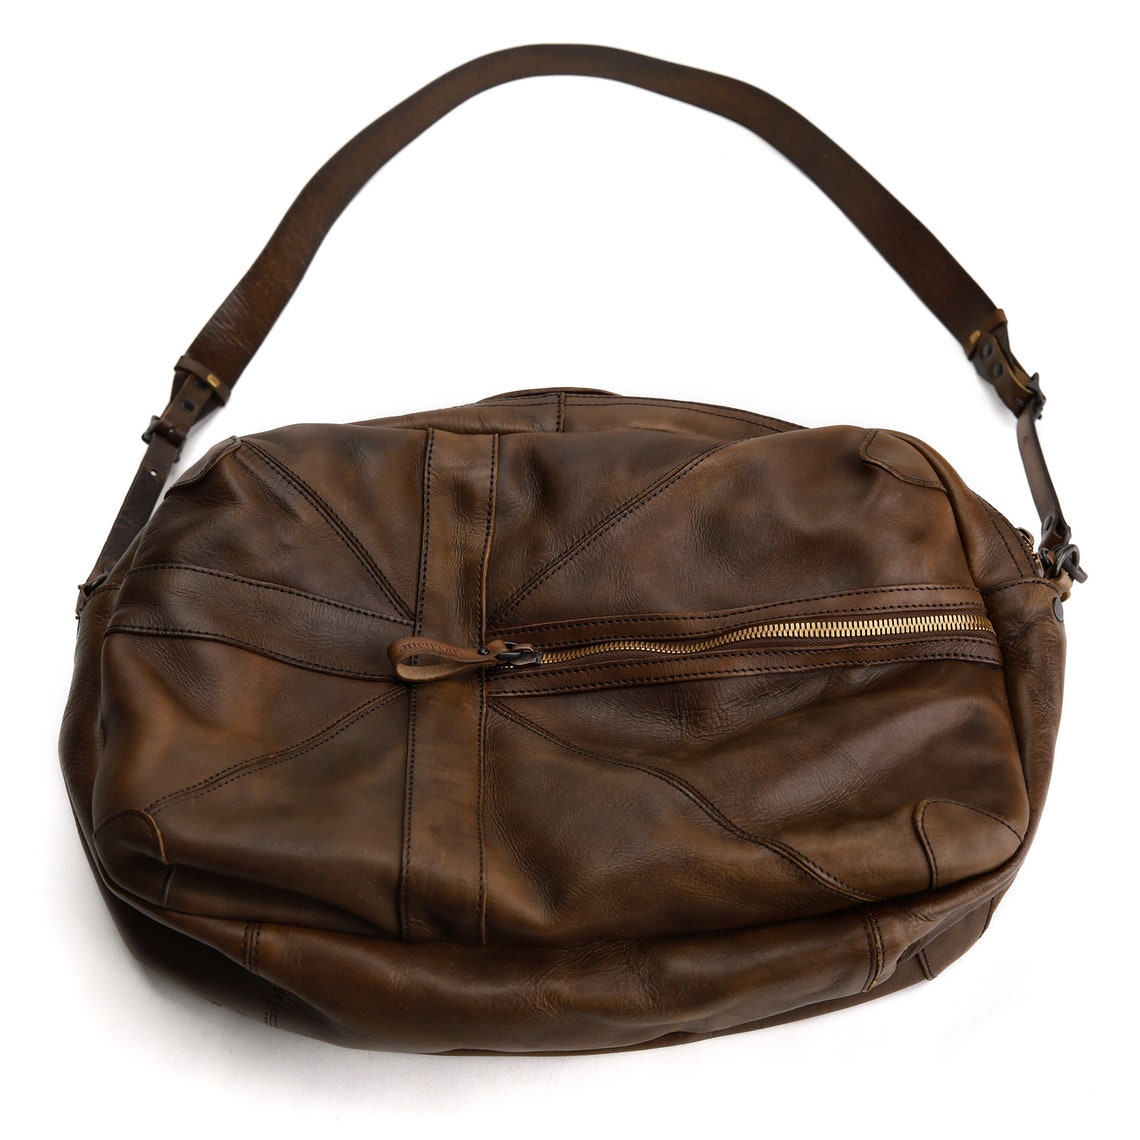 Weekender Bag Travel Duffel Bag Genuine Leather Luggage bag | Etsy